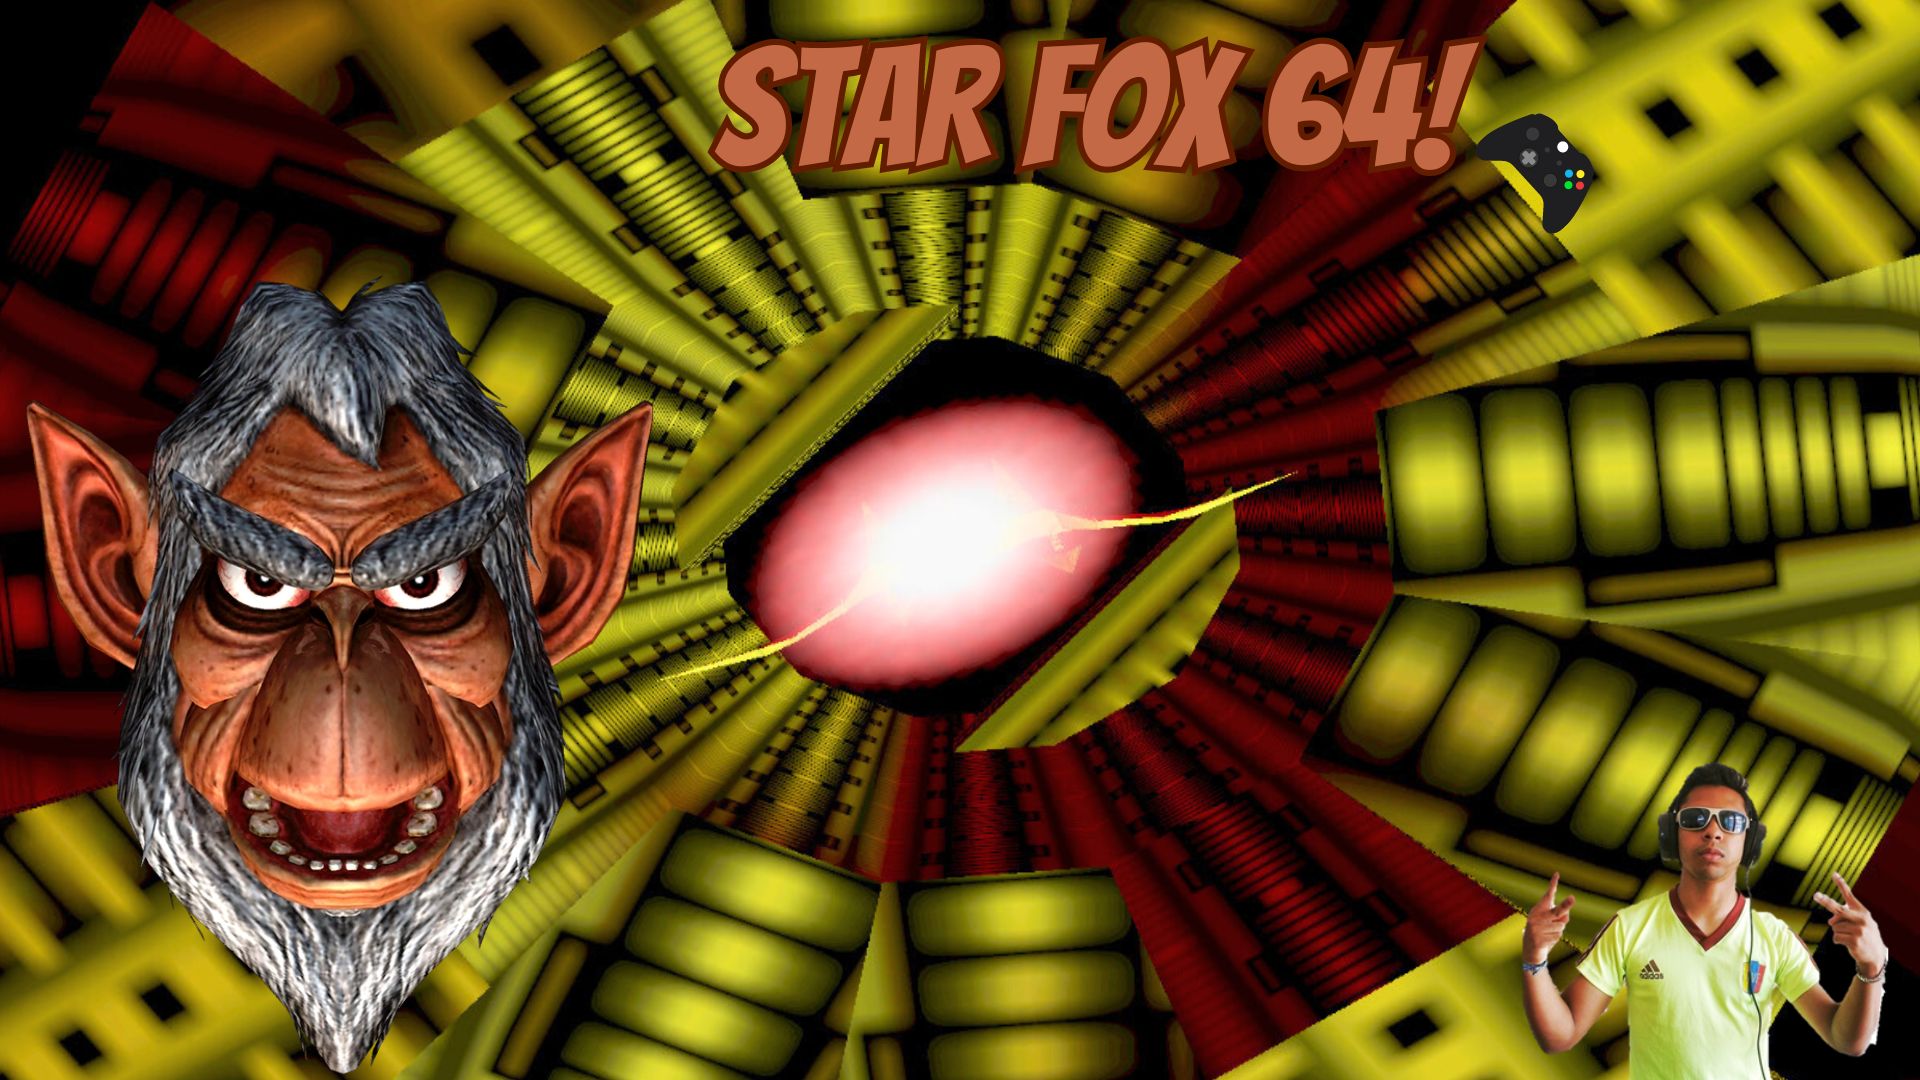 STAR FOX 64!.jpg